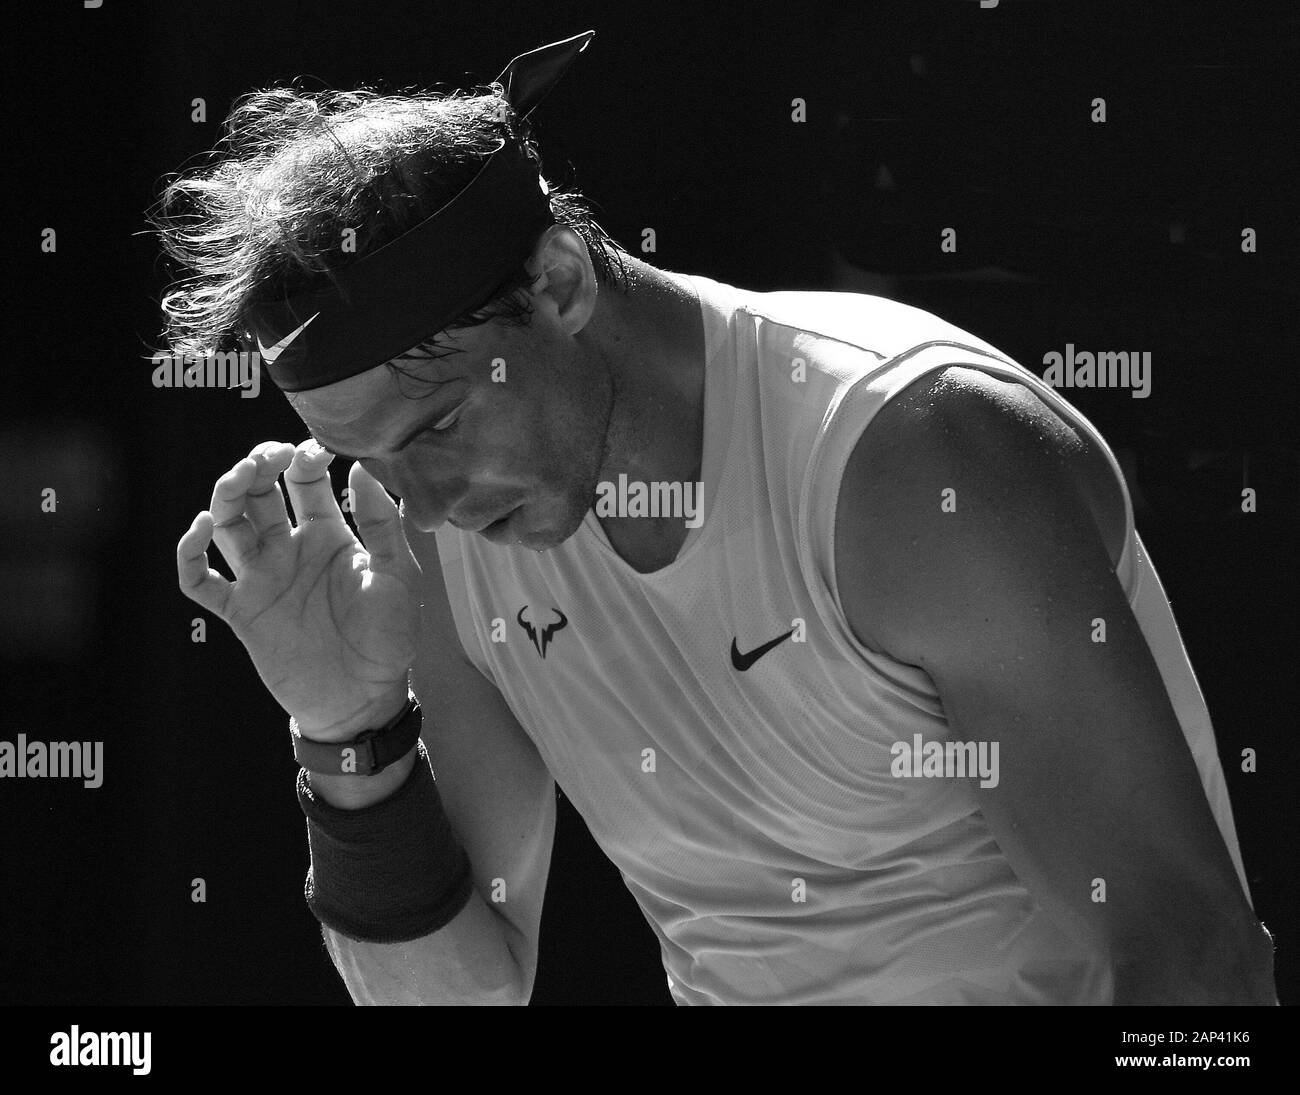 Melbourne, Australien. Januar 2020. Melbourne, Australien. Januar 2020. Melbourne Park Australian Open Day 2 21/01/2020 Rafa Nadal (ESP) gewinnt erste Runde Match Credit: Roger Parker/Alamy Live News Stockfoto